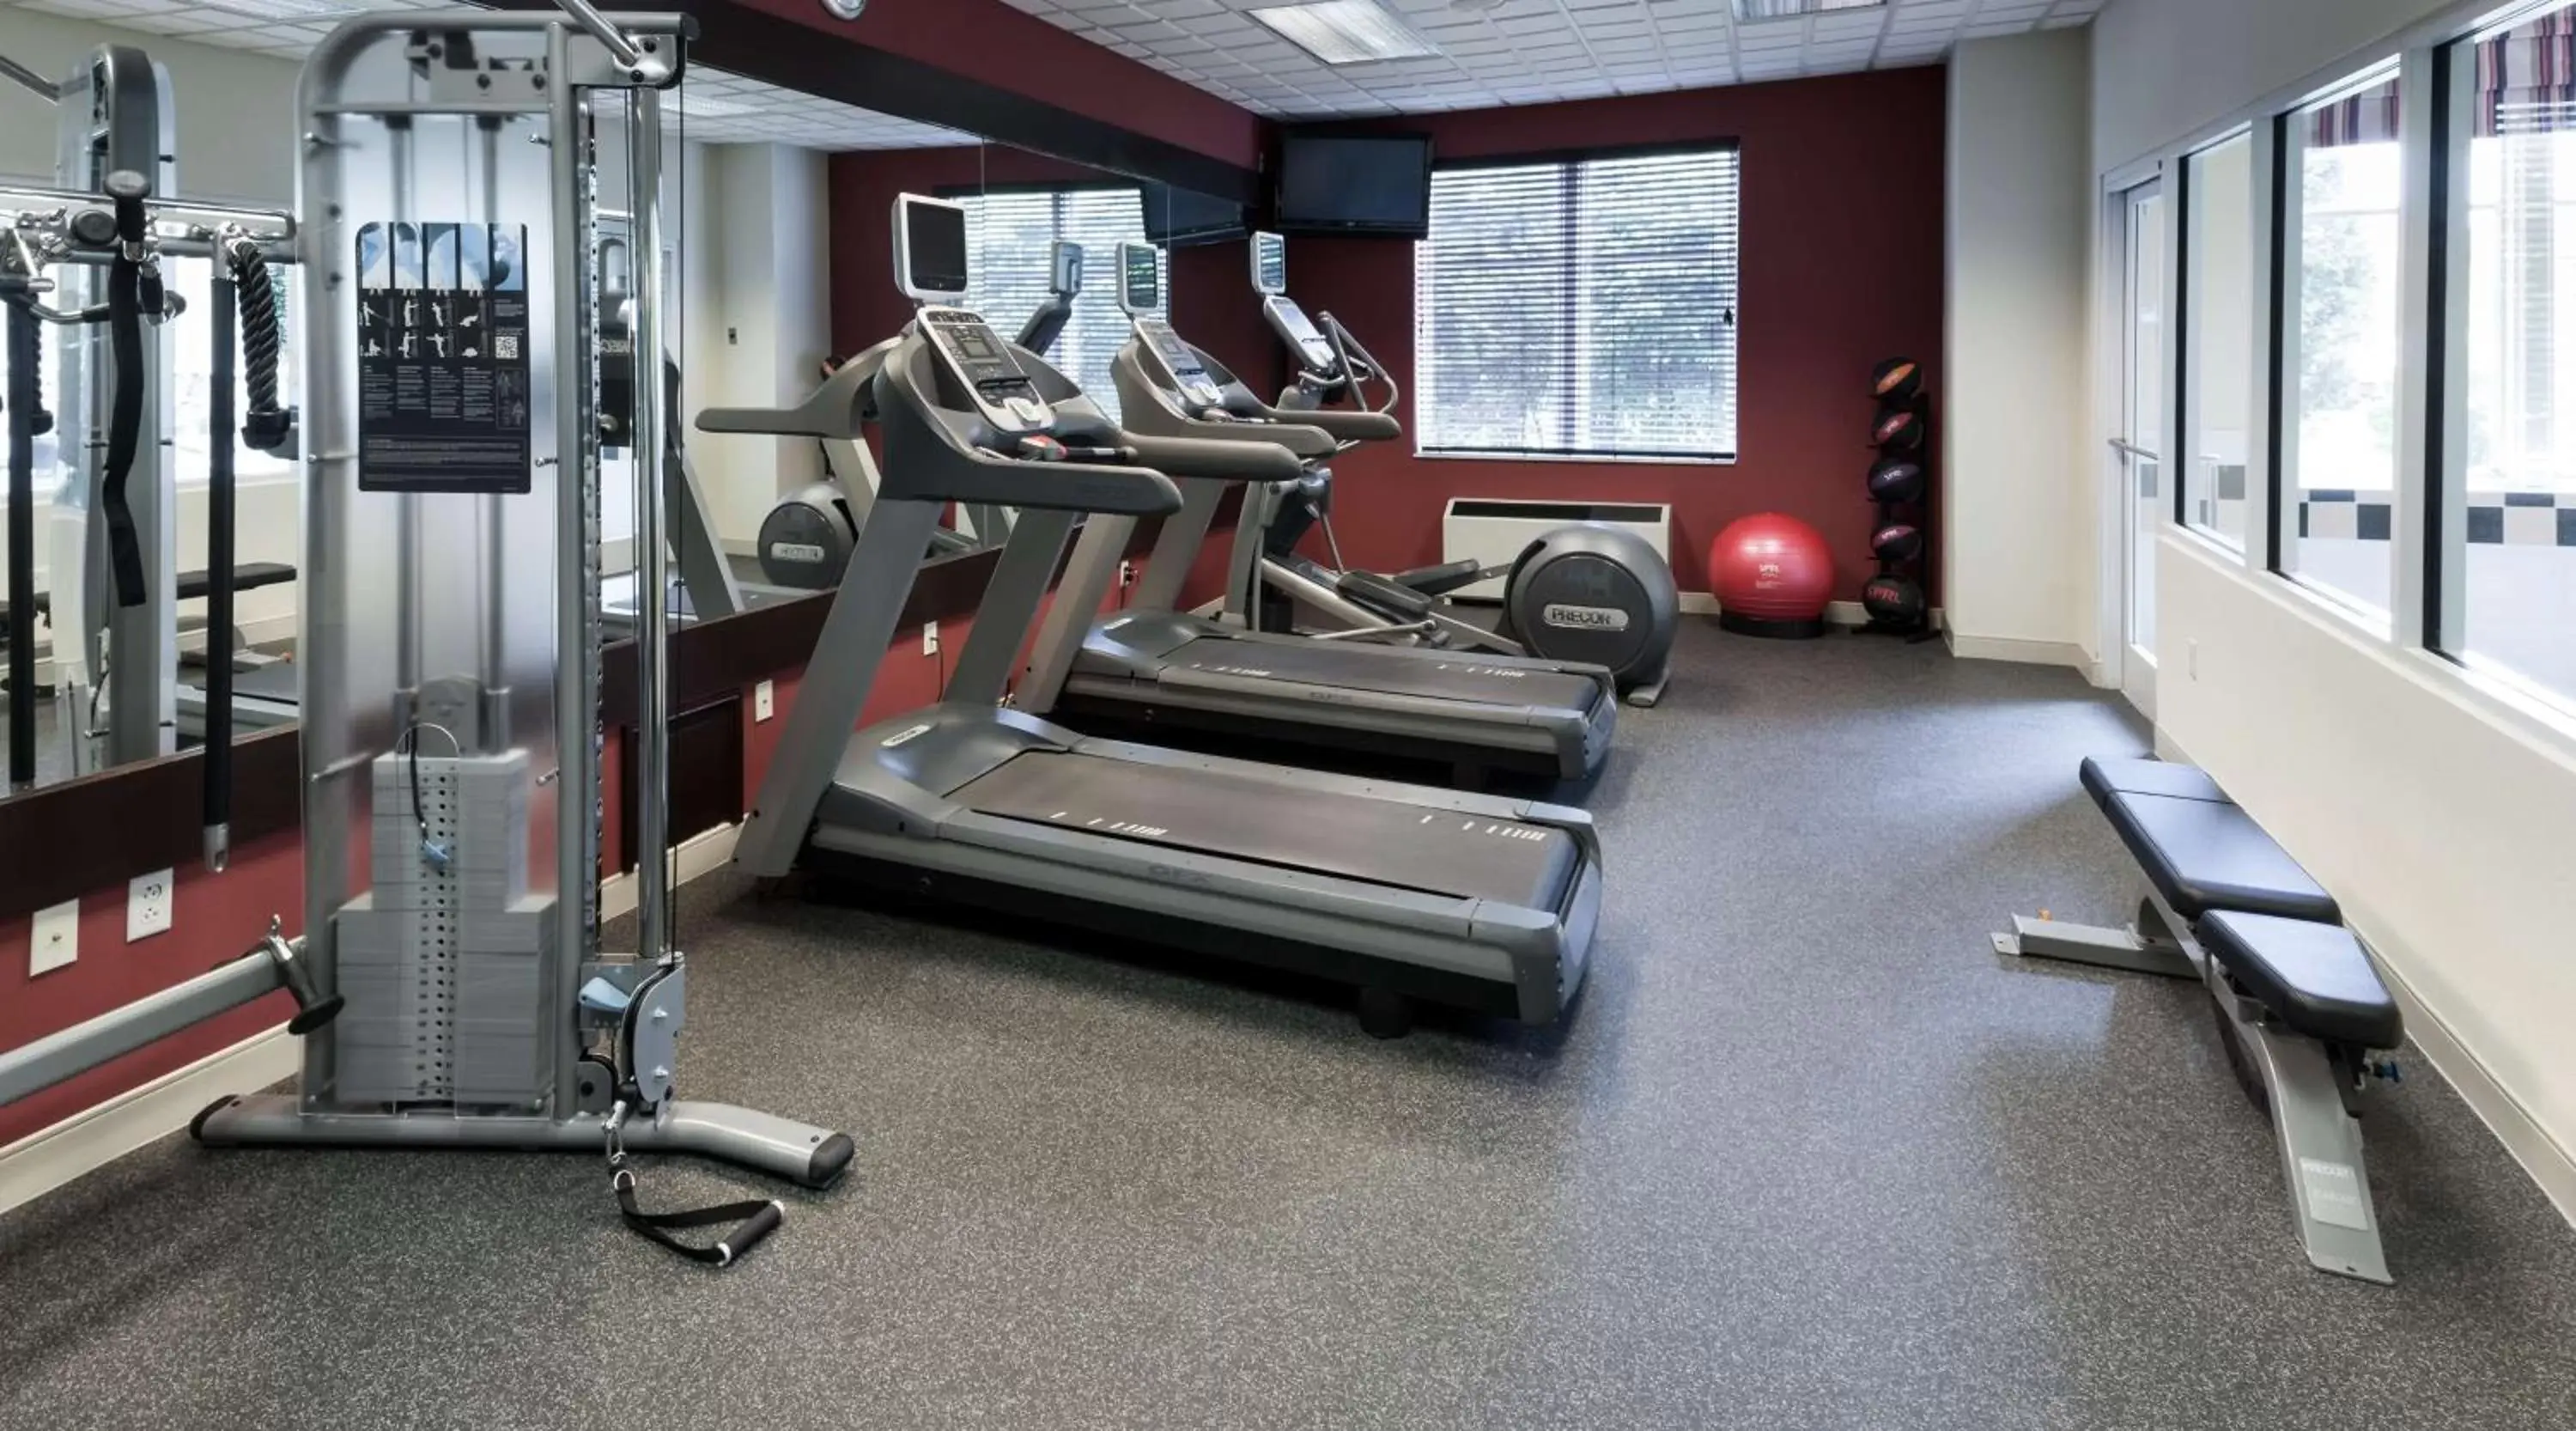 Fitness centre/facilities, Fitness Center/Facilities in Hilton Garden Inn Rockaway